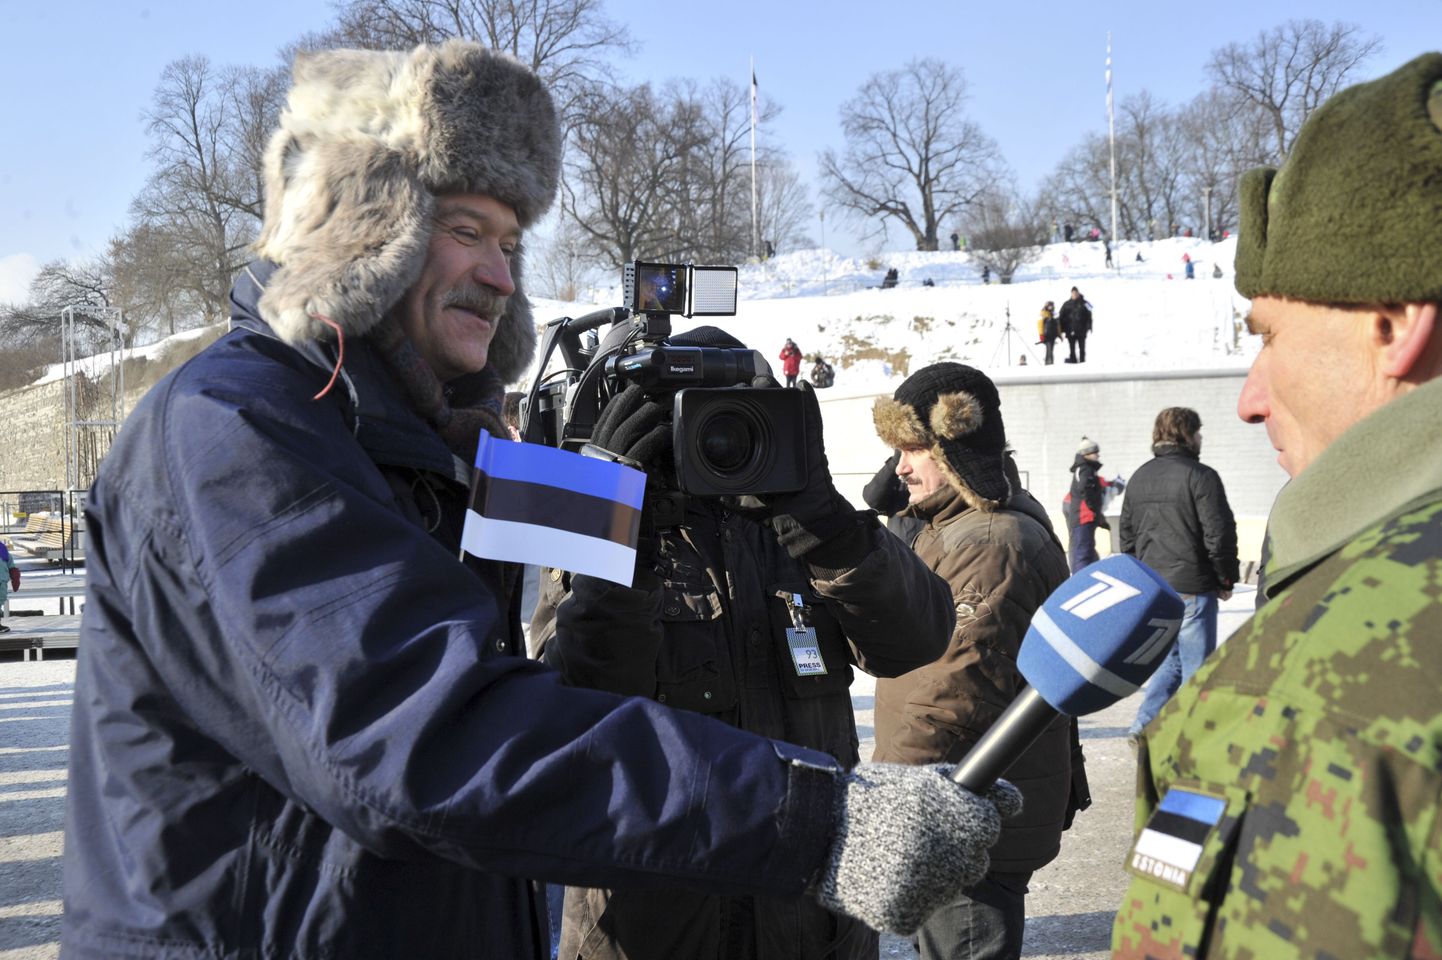 Mihhail Vladislavlev veebruaris 2011 kaitseväe juhataja kindral Ants Laaneotsa intervjueerimas.